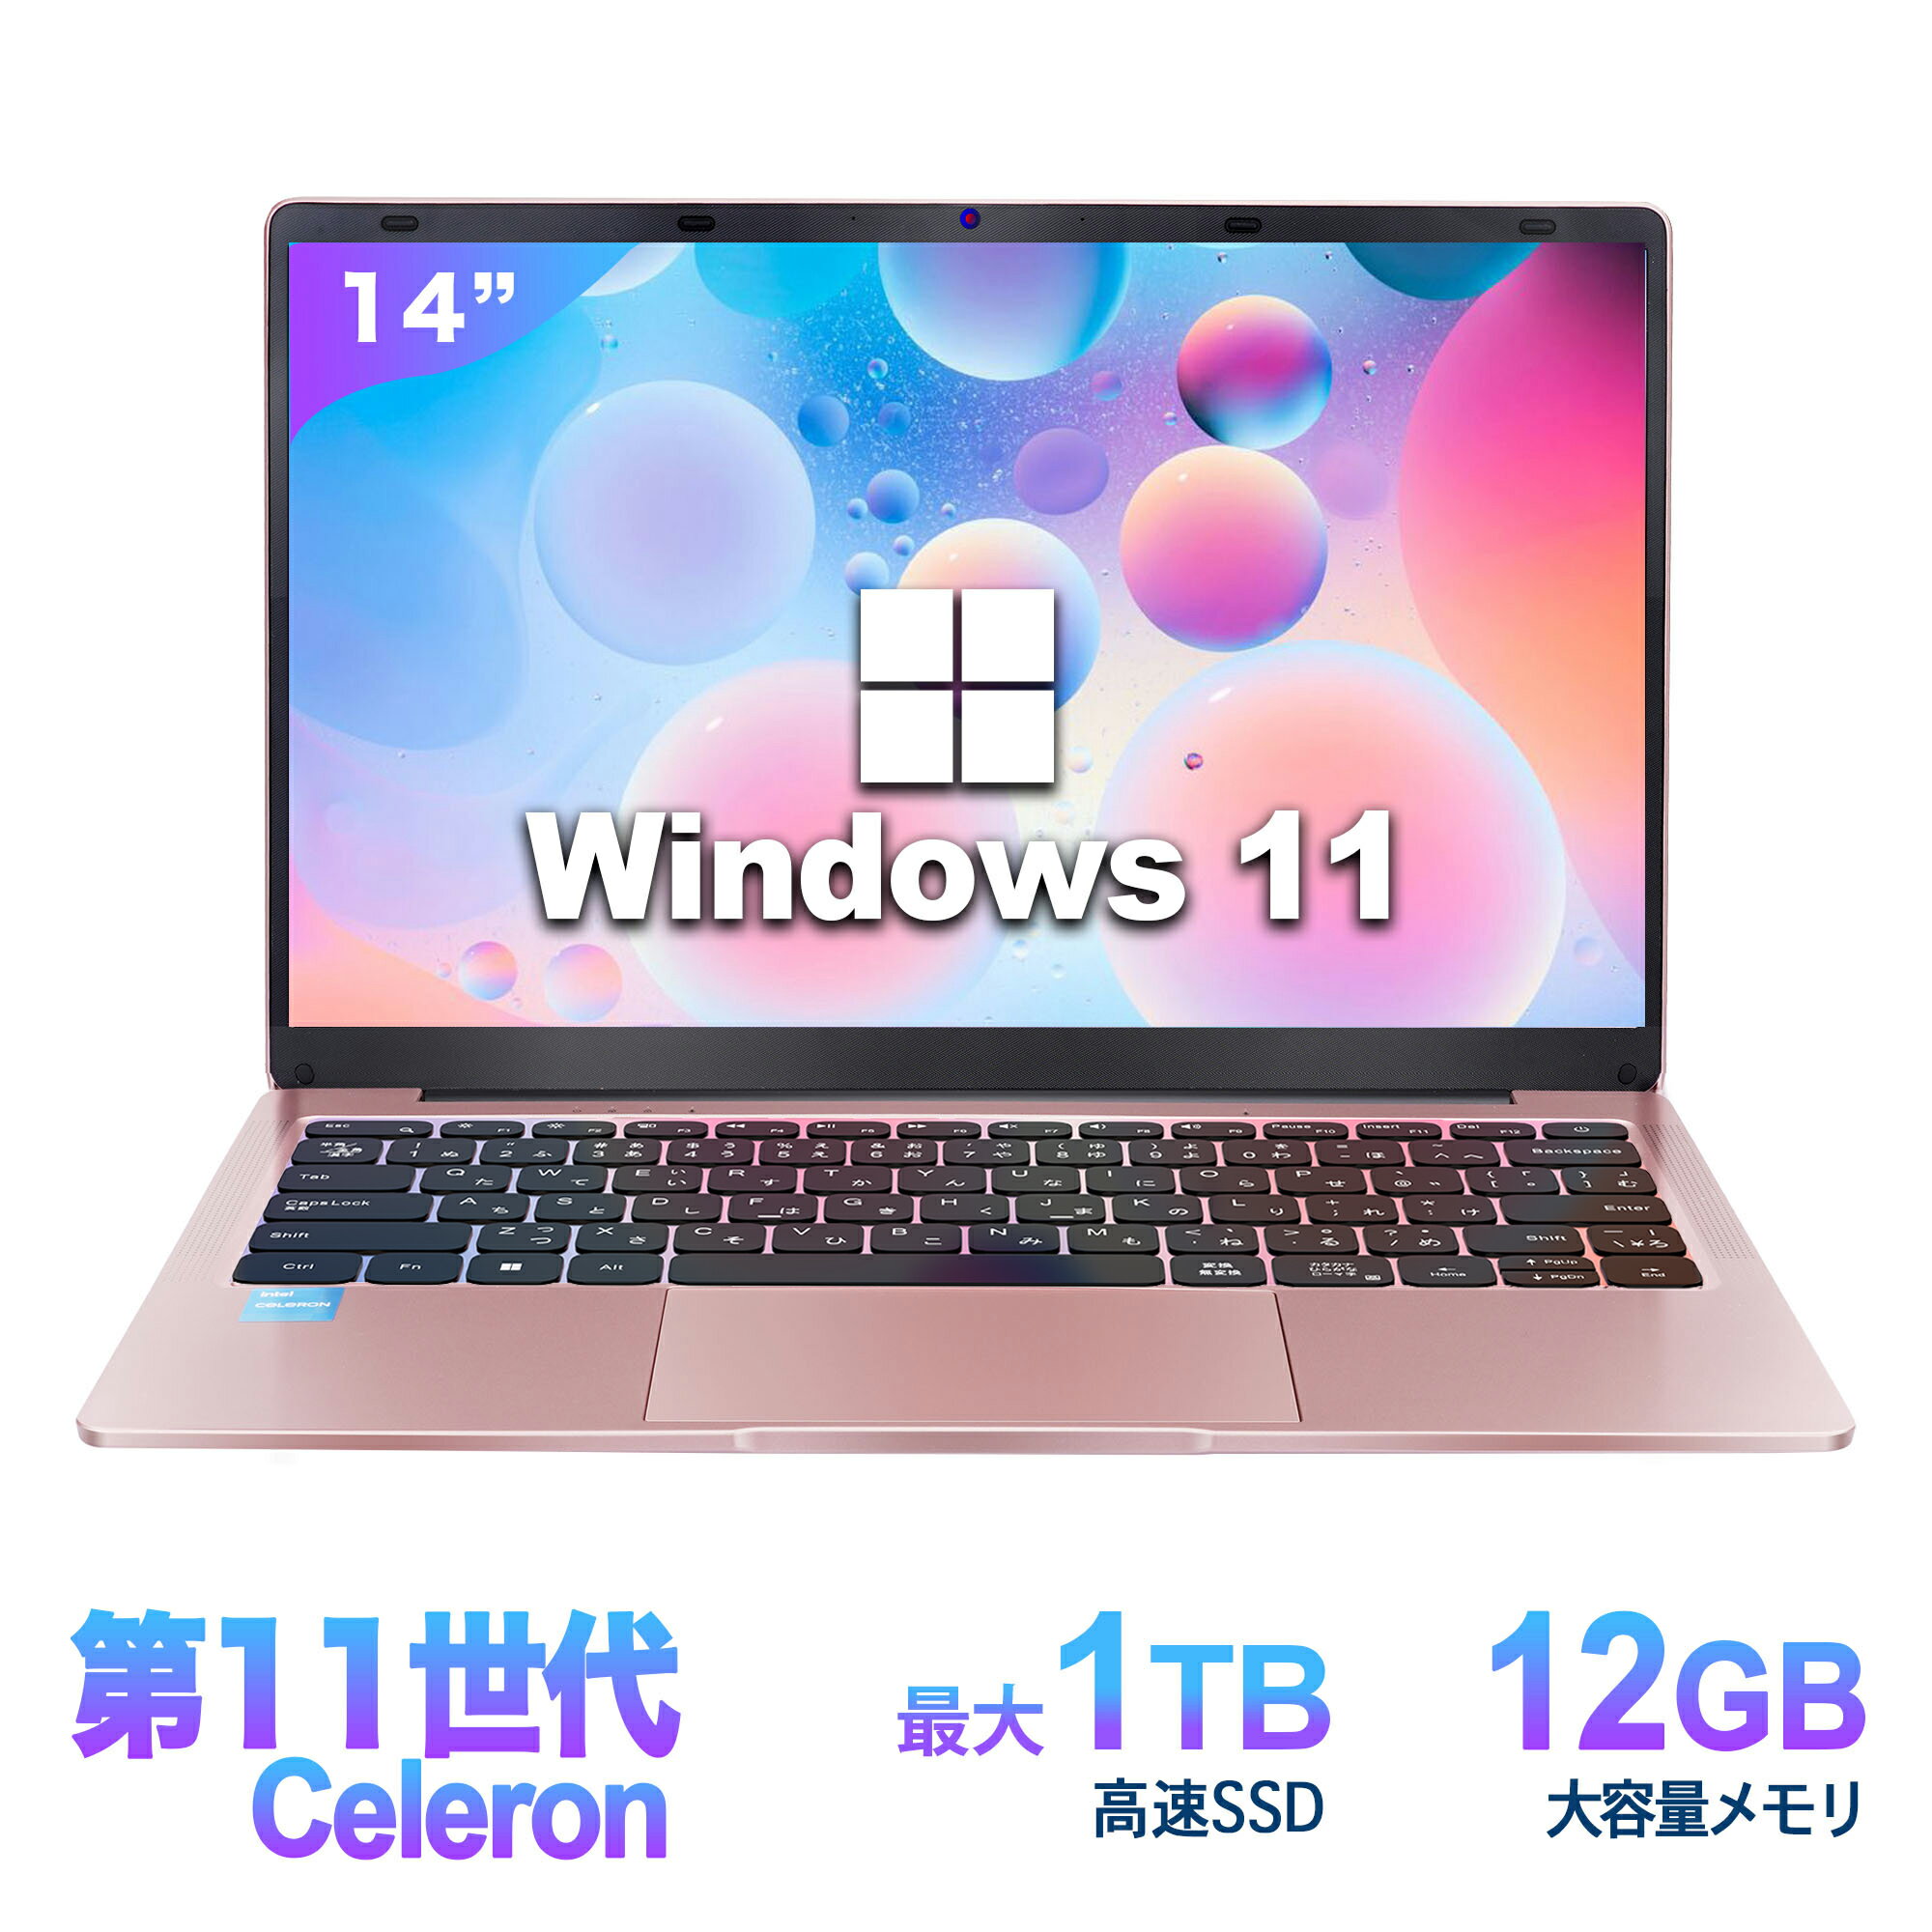 ノートパソコン ノートパソコン 新品 Office付き 初心者向け 初期設定済 Windows11 Pro 日本語キーボード Intel n3350 メモリ 12GB 高速SSD 256GB 14型液晶 Webカメラ USB3.0 miniHDMI 無線機能 Bluetooth 軽量 大容量バッテリー PC ローズゴールド